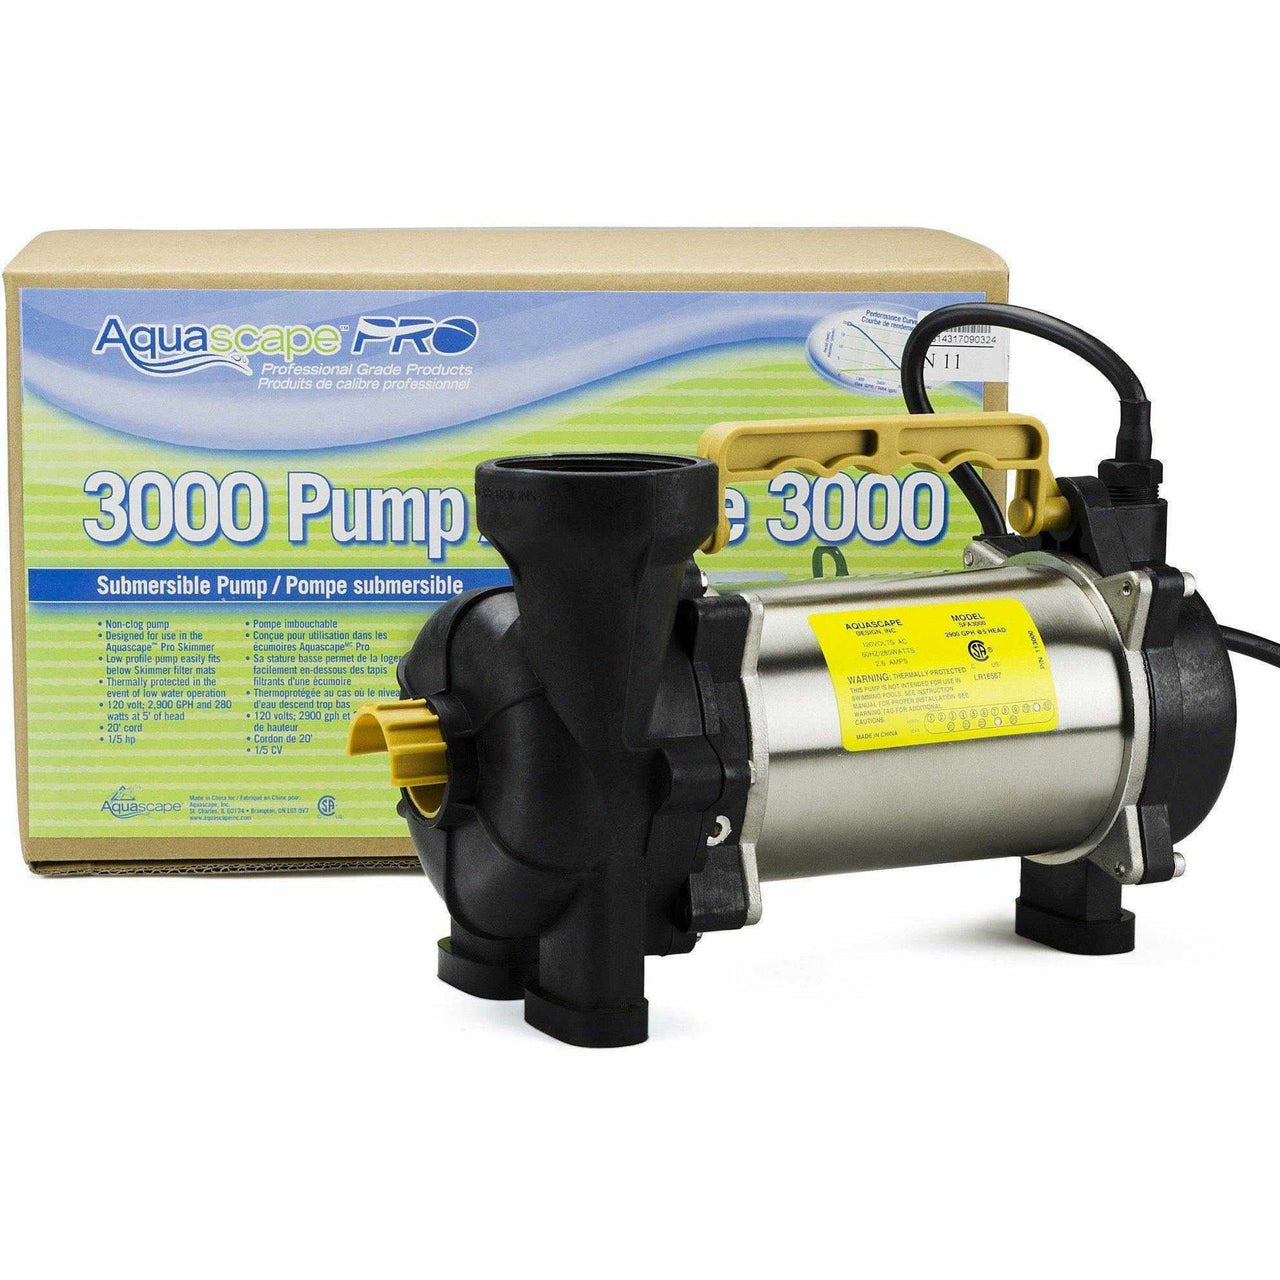 AquascapePRO 3000 Pump